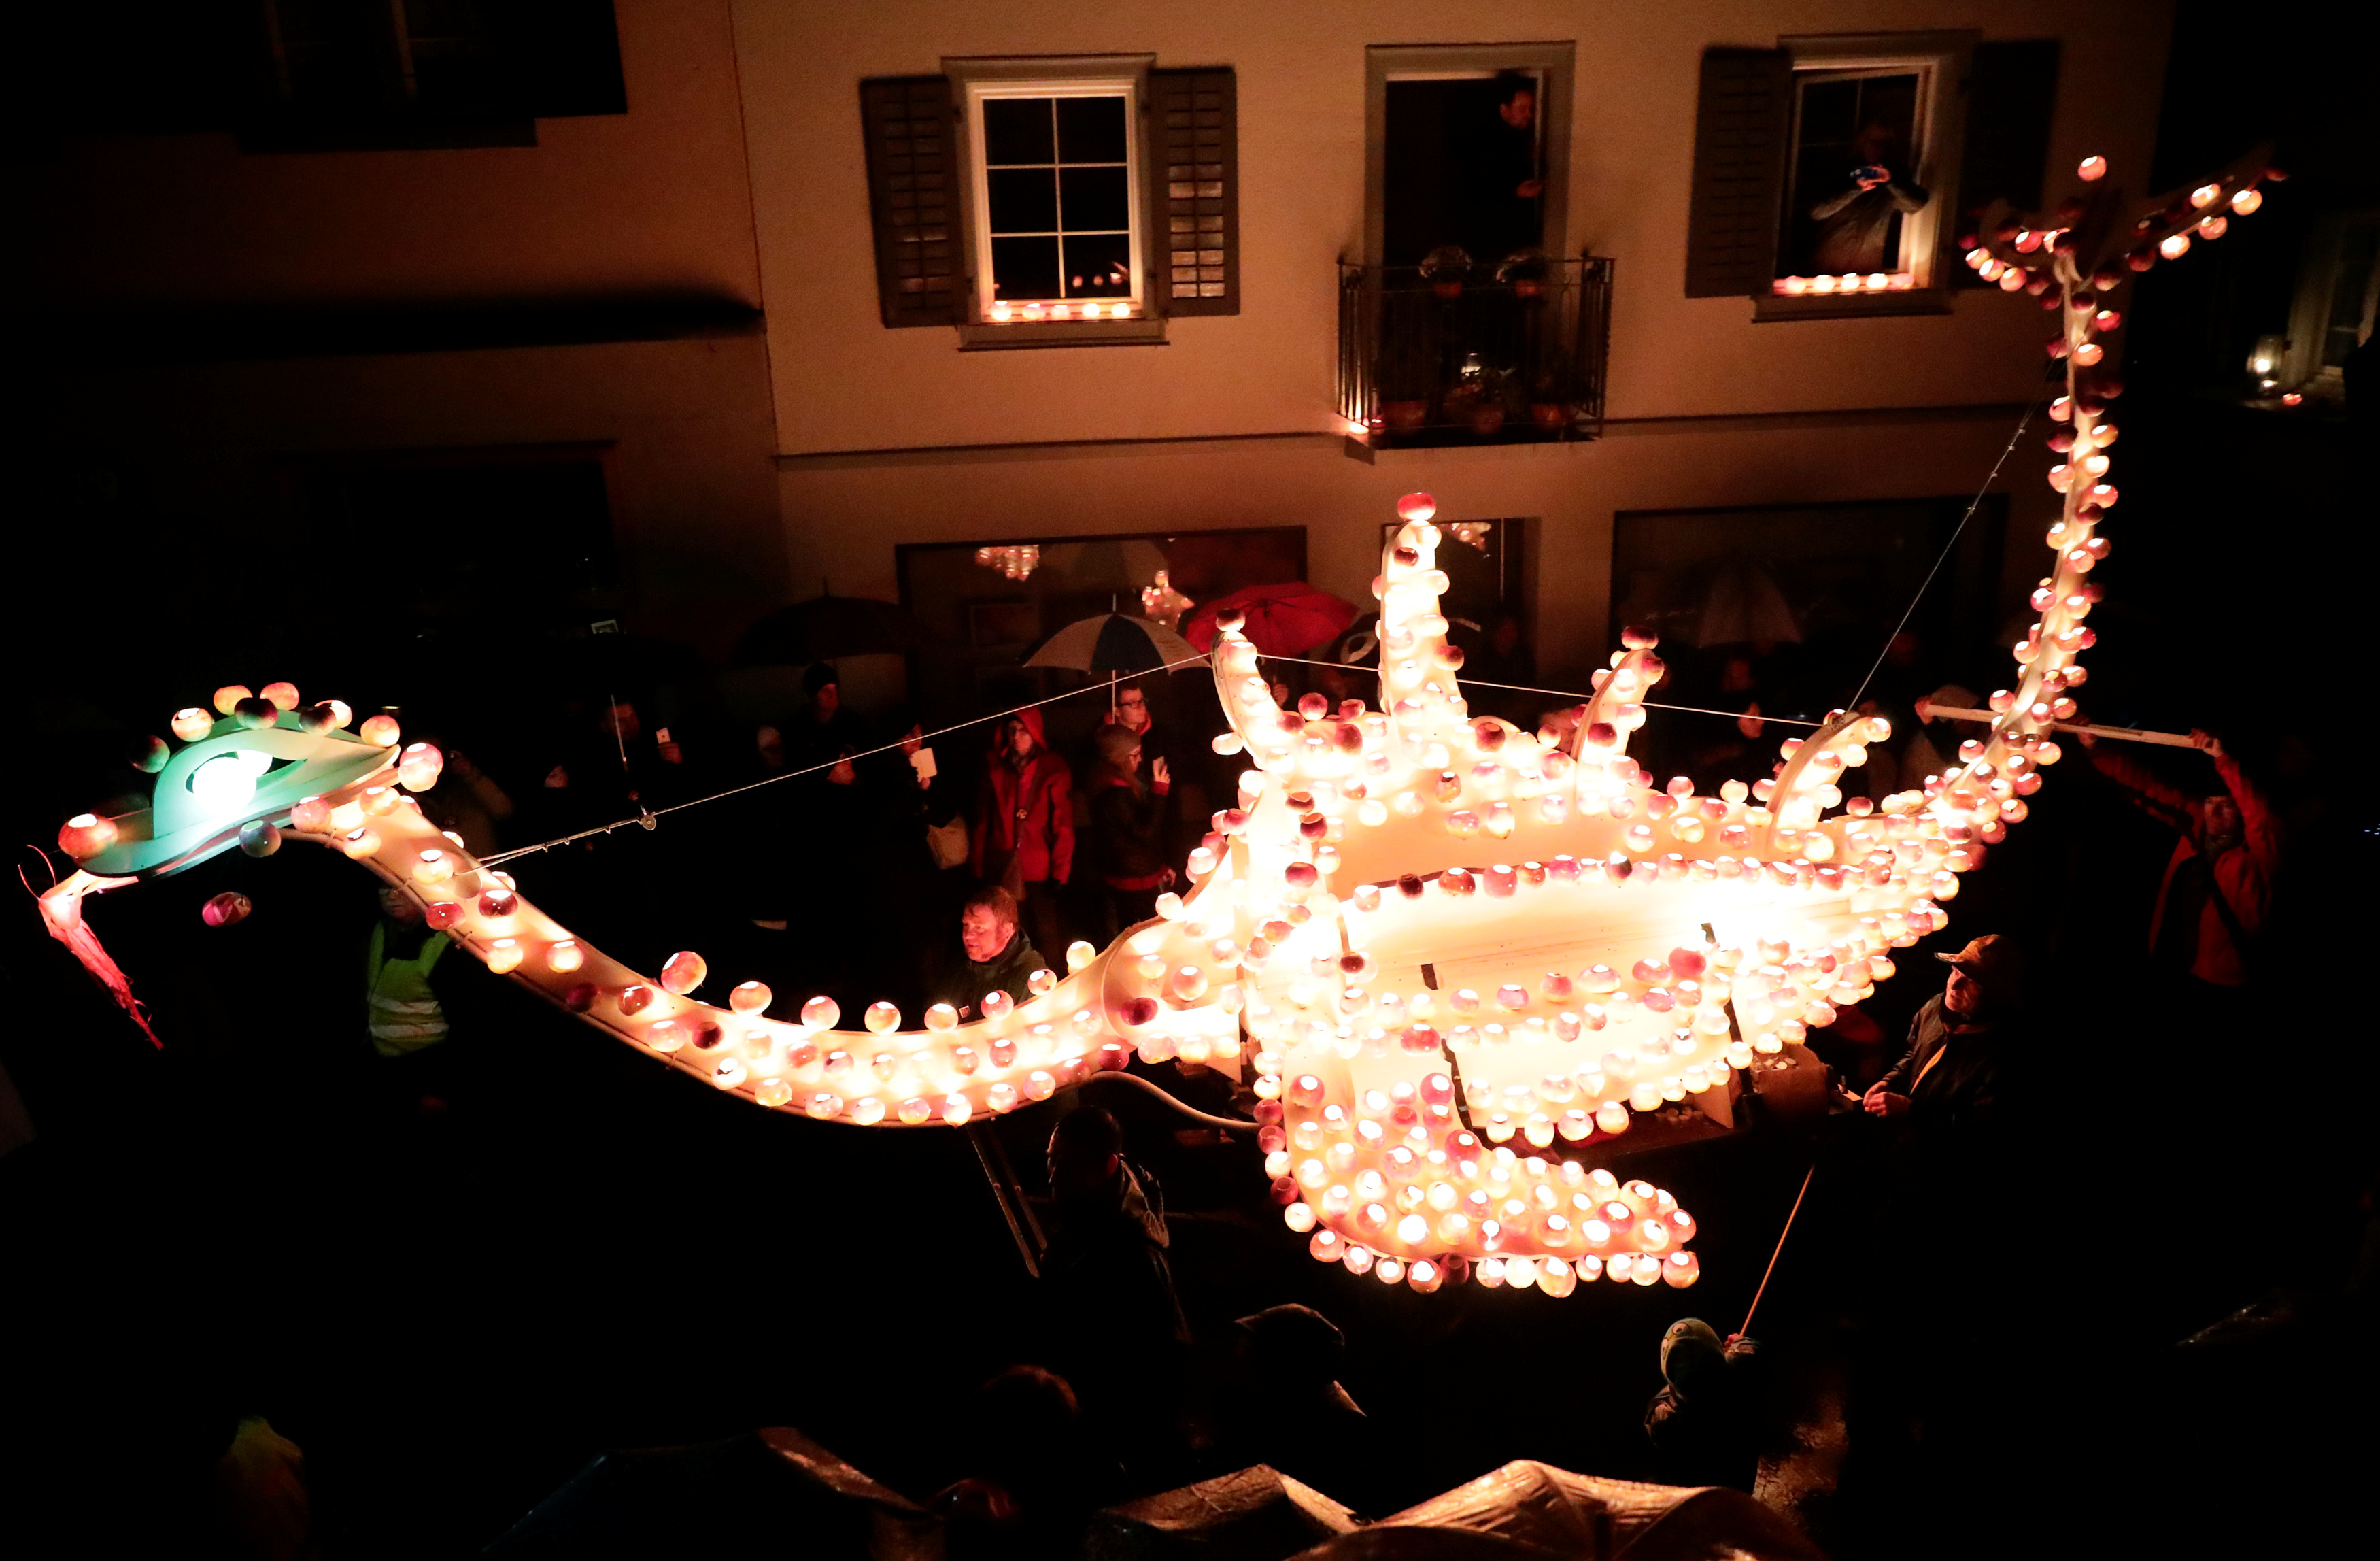 أضواء مبهرة على شكل حيوانات فى مهرجان رايبشيلبى بسويسرا